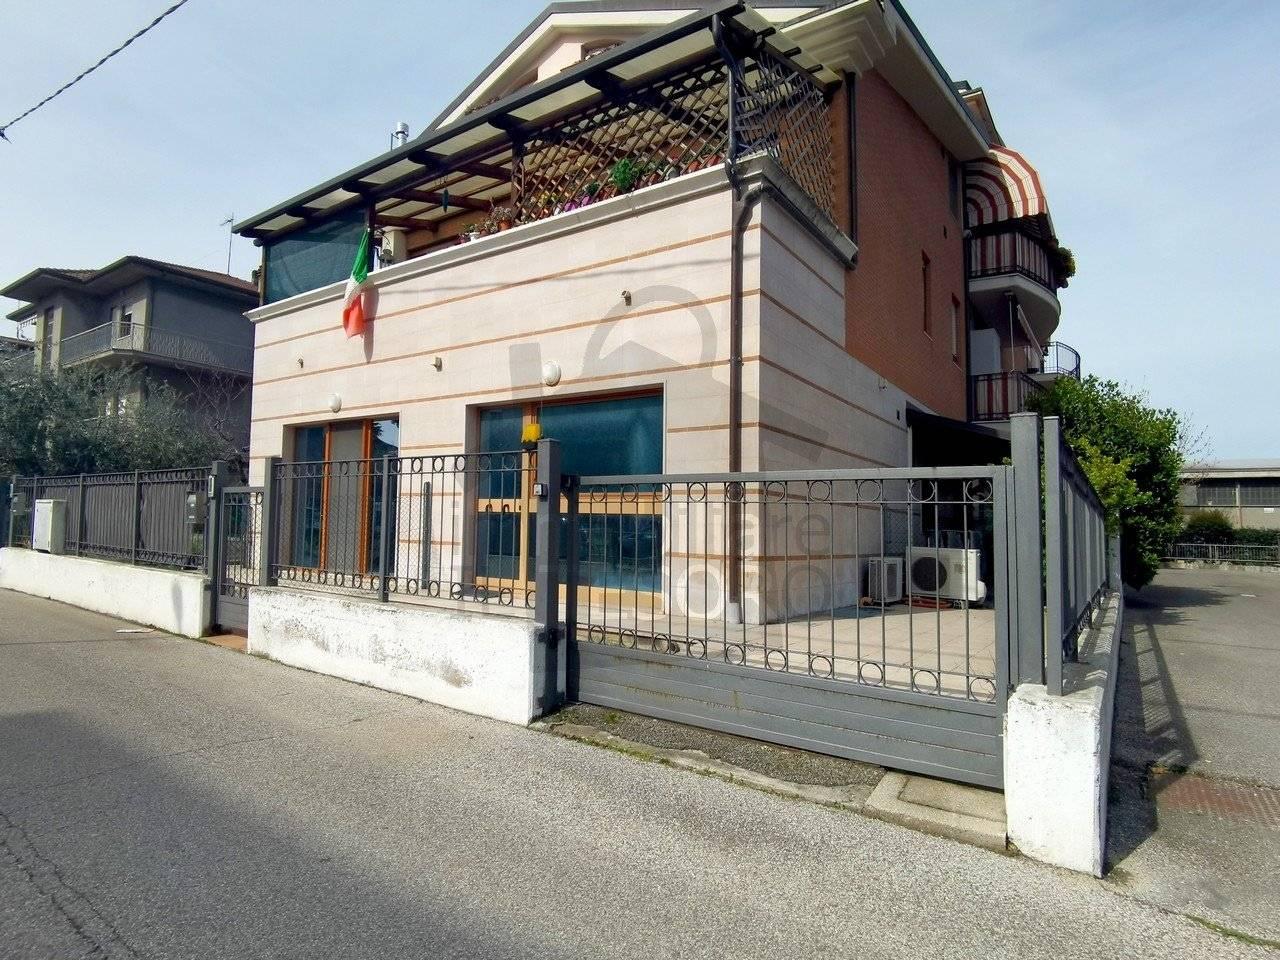 Ufficio condiviso in vendita a Verucchio